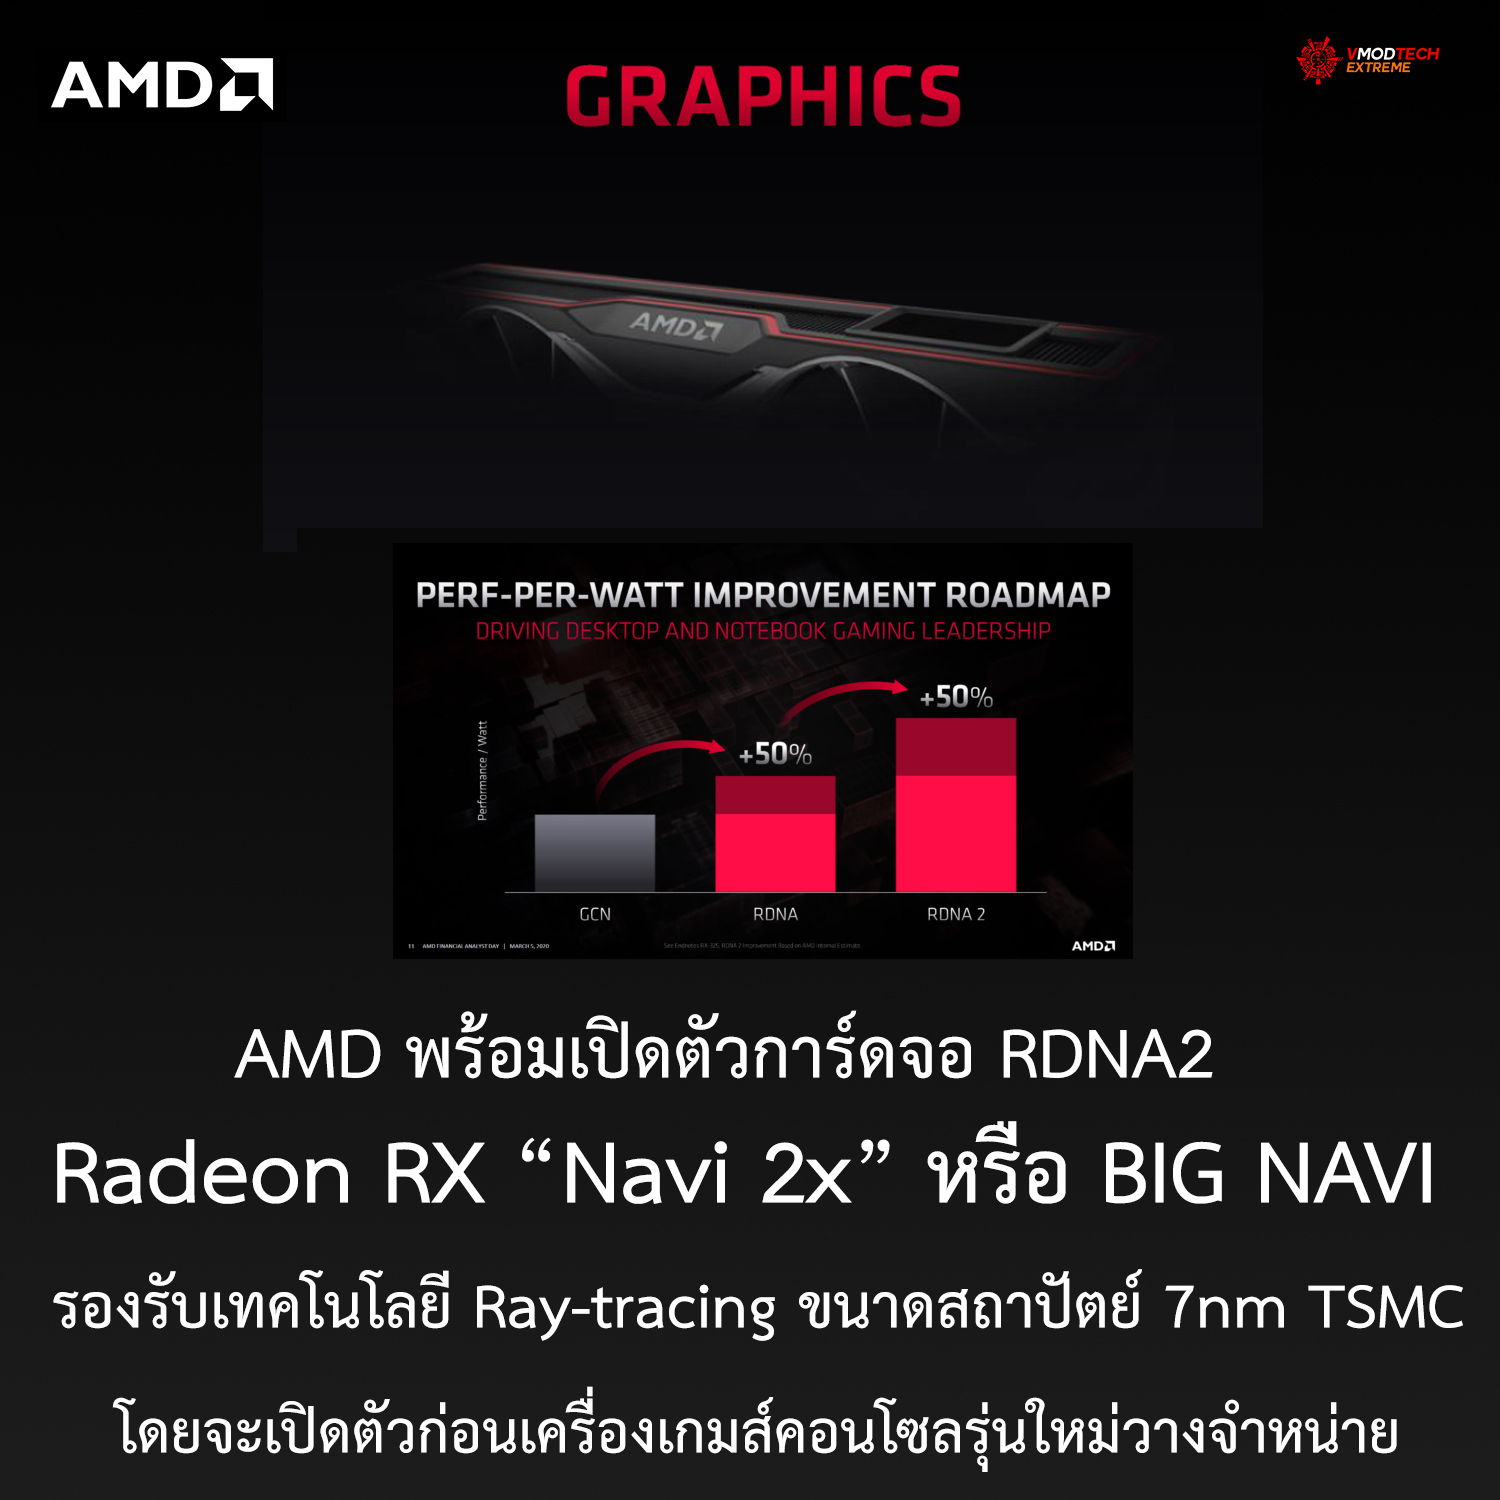 AMD พร้อมเปิดตัวการ์ดจอ RDNA2 และซีพียู ZEN3 ในปลายปีนี้และการ์ดจอ RDNA2 หรือ BIG NAVI นั้นจะเปิดตัวก่อนเครื่องเกมส์คอนโซล (Play Station 5 และ XBOX) รุ่นใหม่วางจำหน่าย 